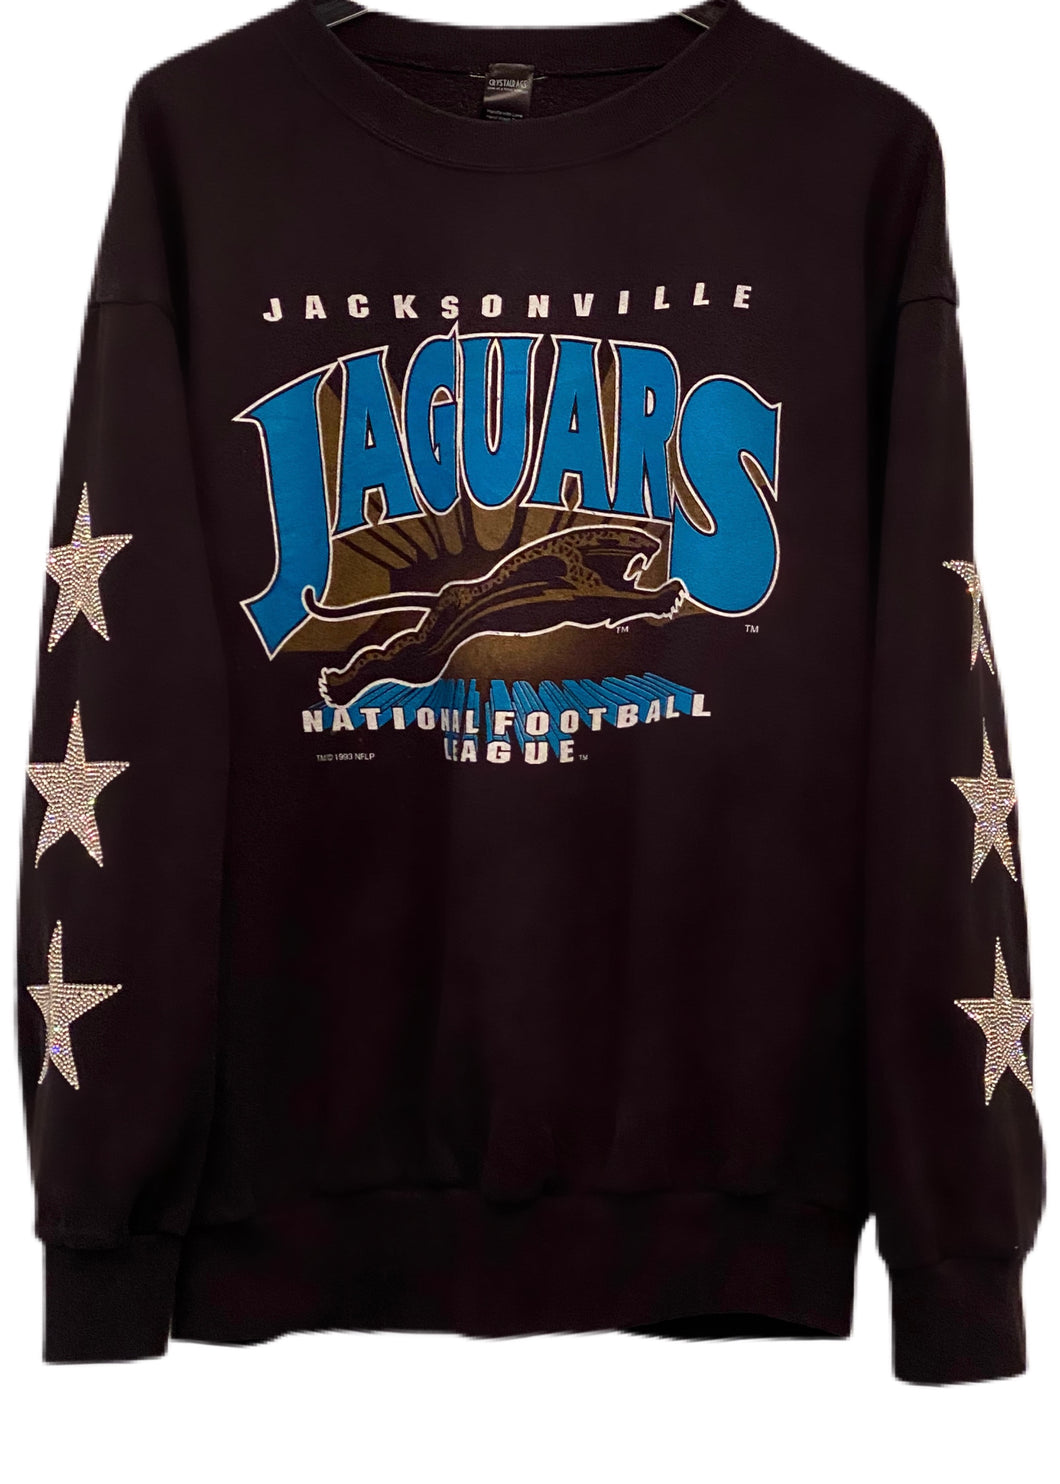 Jacksonville Jaguars, NFL One of a KIND Vintage Sweatshirt with Three Crystal Star Design